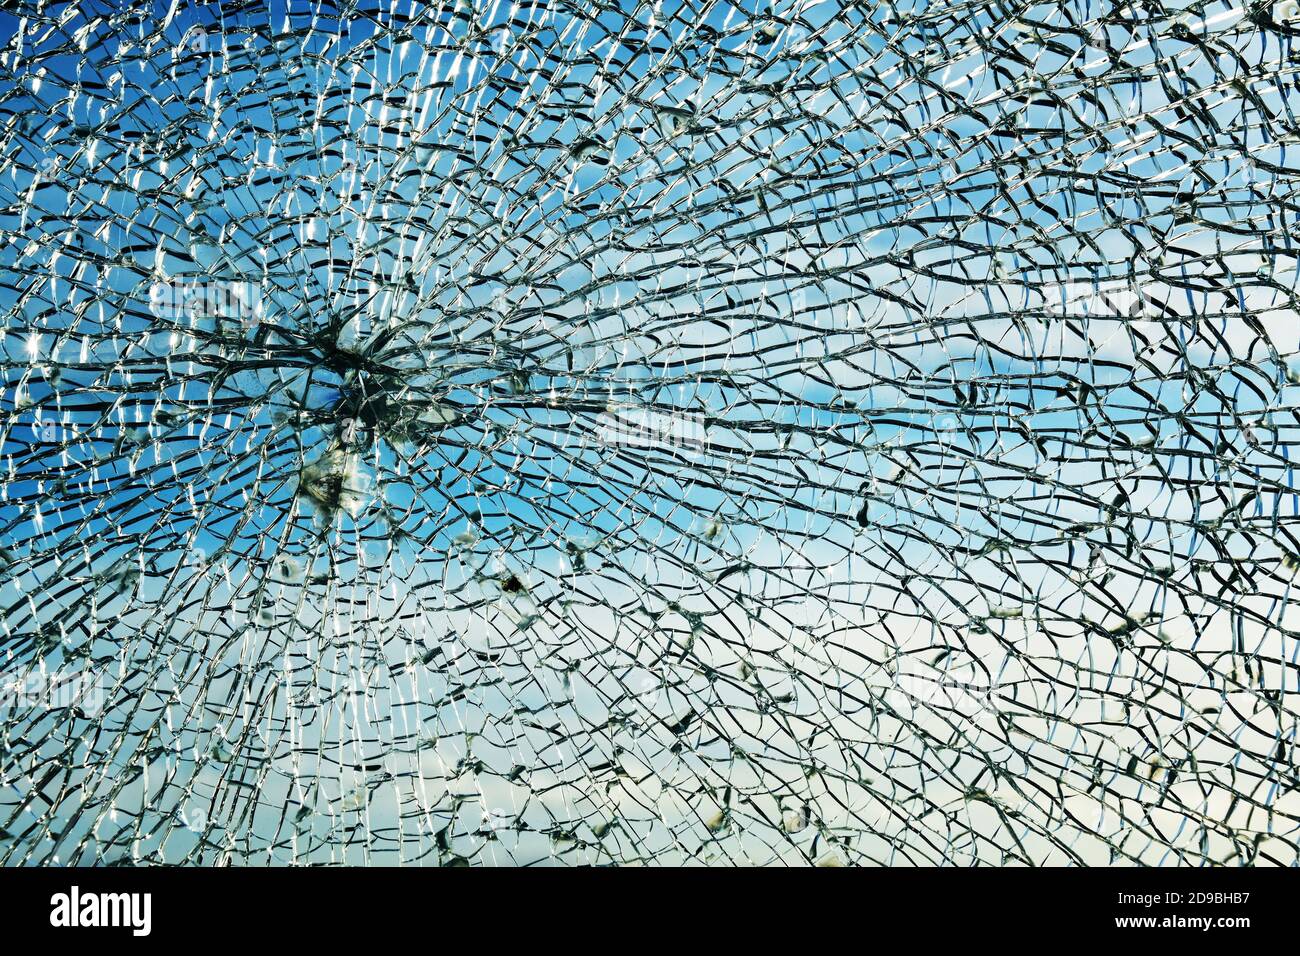 Gebrochenes Fenster aus Sicherheitslaminatglas nach einem Steinwurf, zeigt ein charakteristisches kreisförmiges Spinnennetz Muster und körnige Brocken, Schutz A Stockfoto